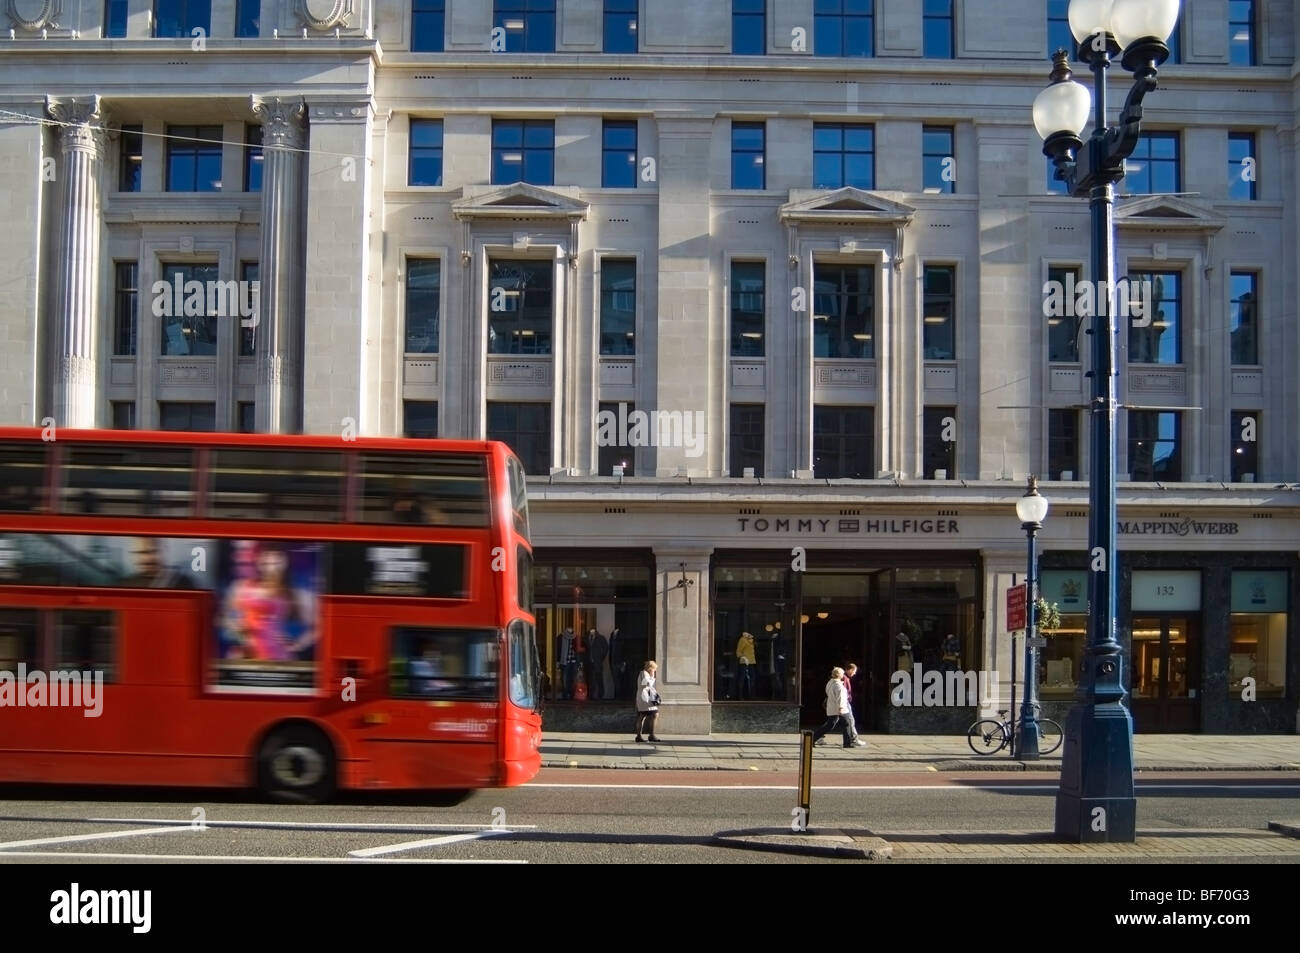 Façade magasin Tommy Hilfiger dans Regent Street, Londres Photo Stock -  Alamy